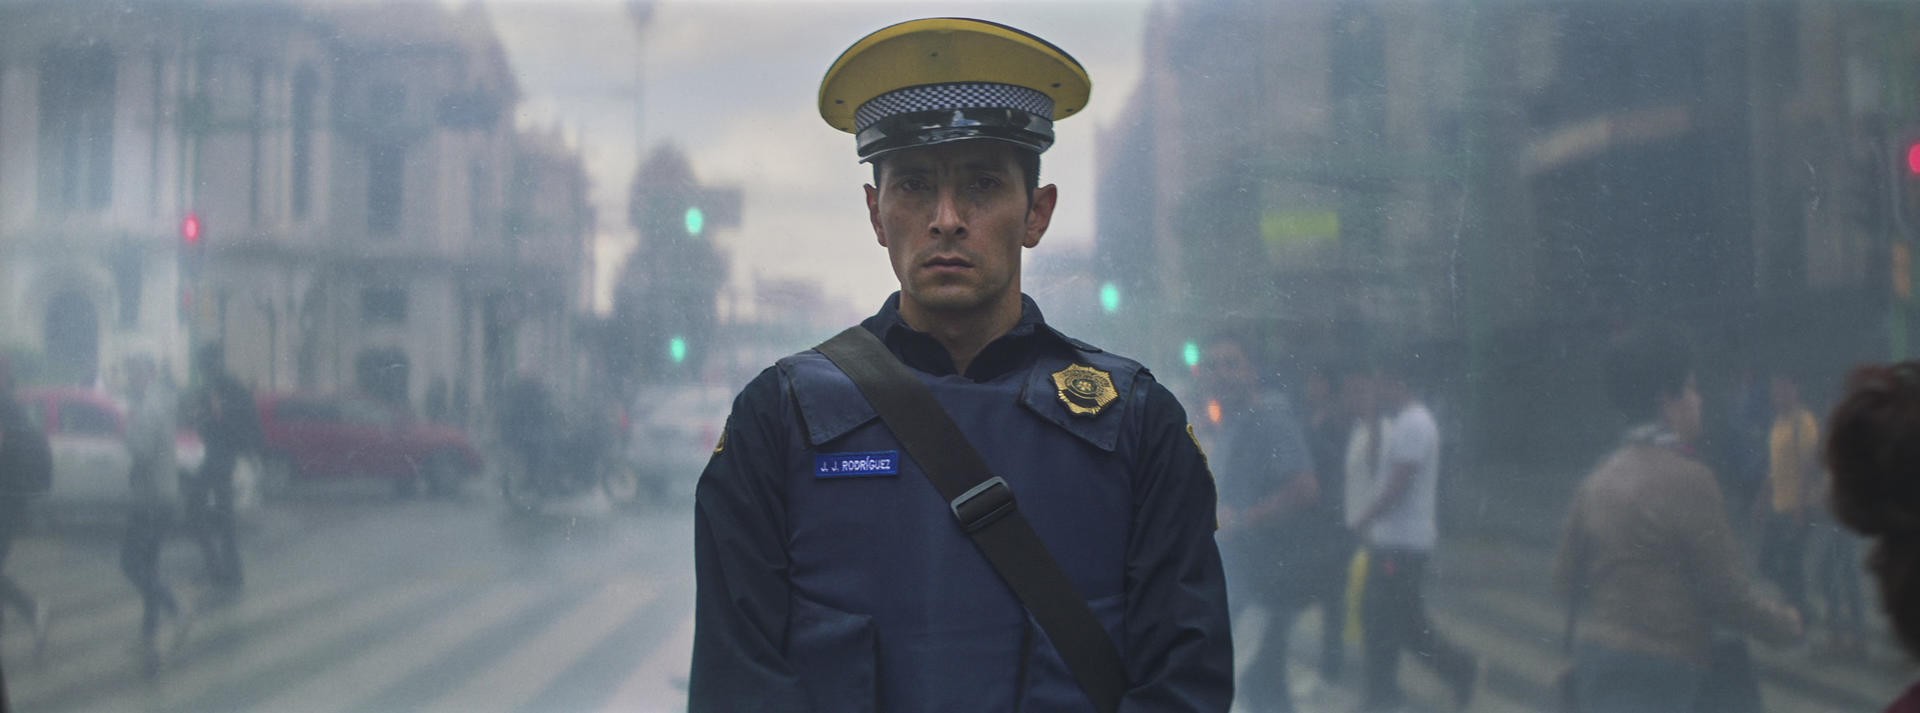 Um Filme de Policiais estreia no dia 5 e conta o esquema de corrupção na polícia mexicana (Foto: Divulgação/Netflix)